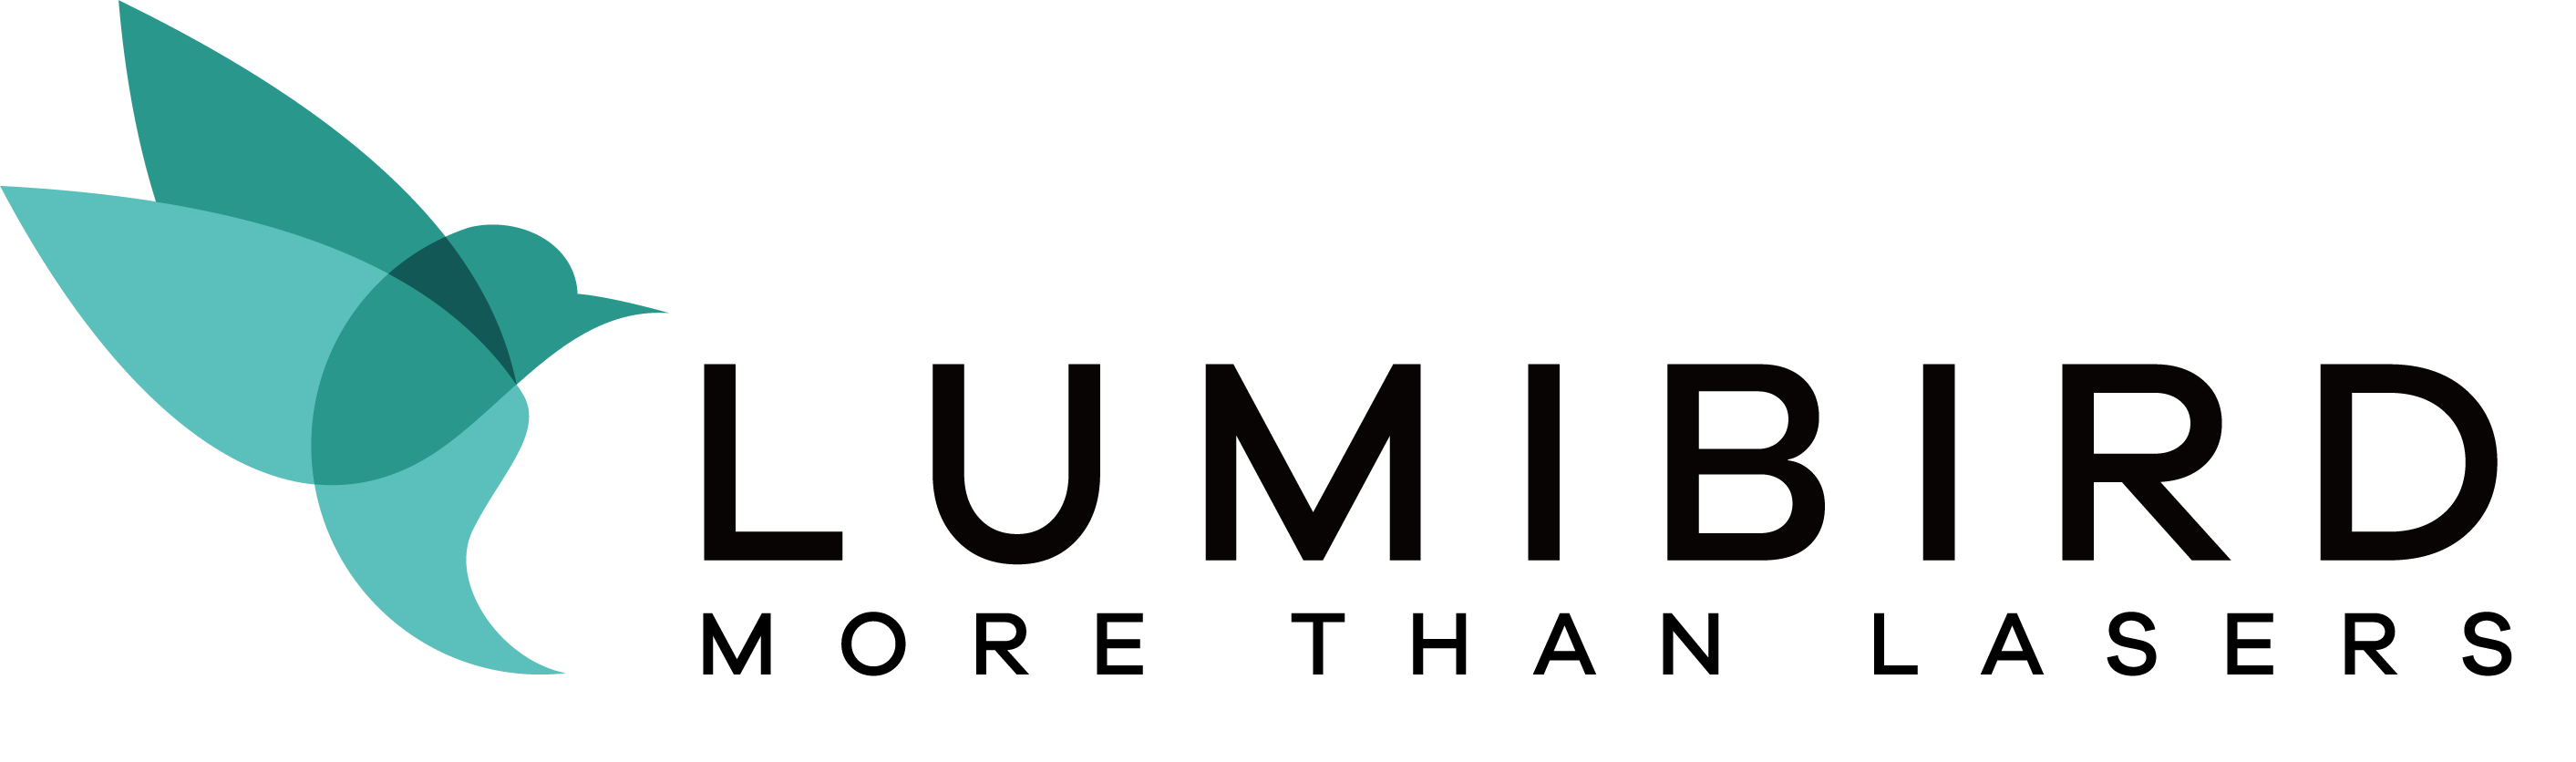 lumibird-logo-HD.png